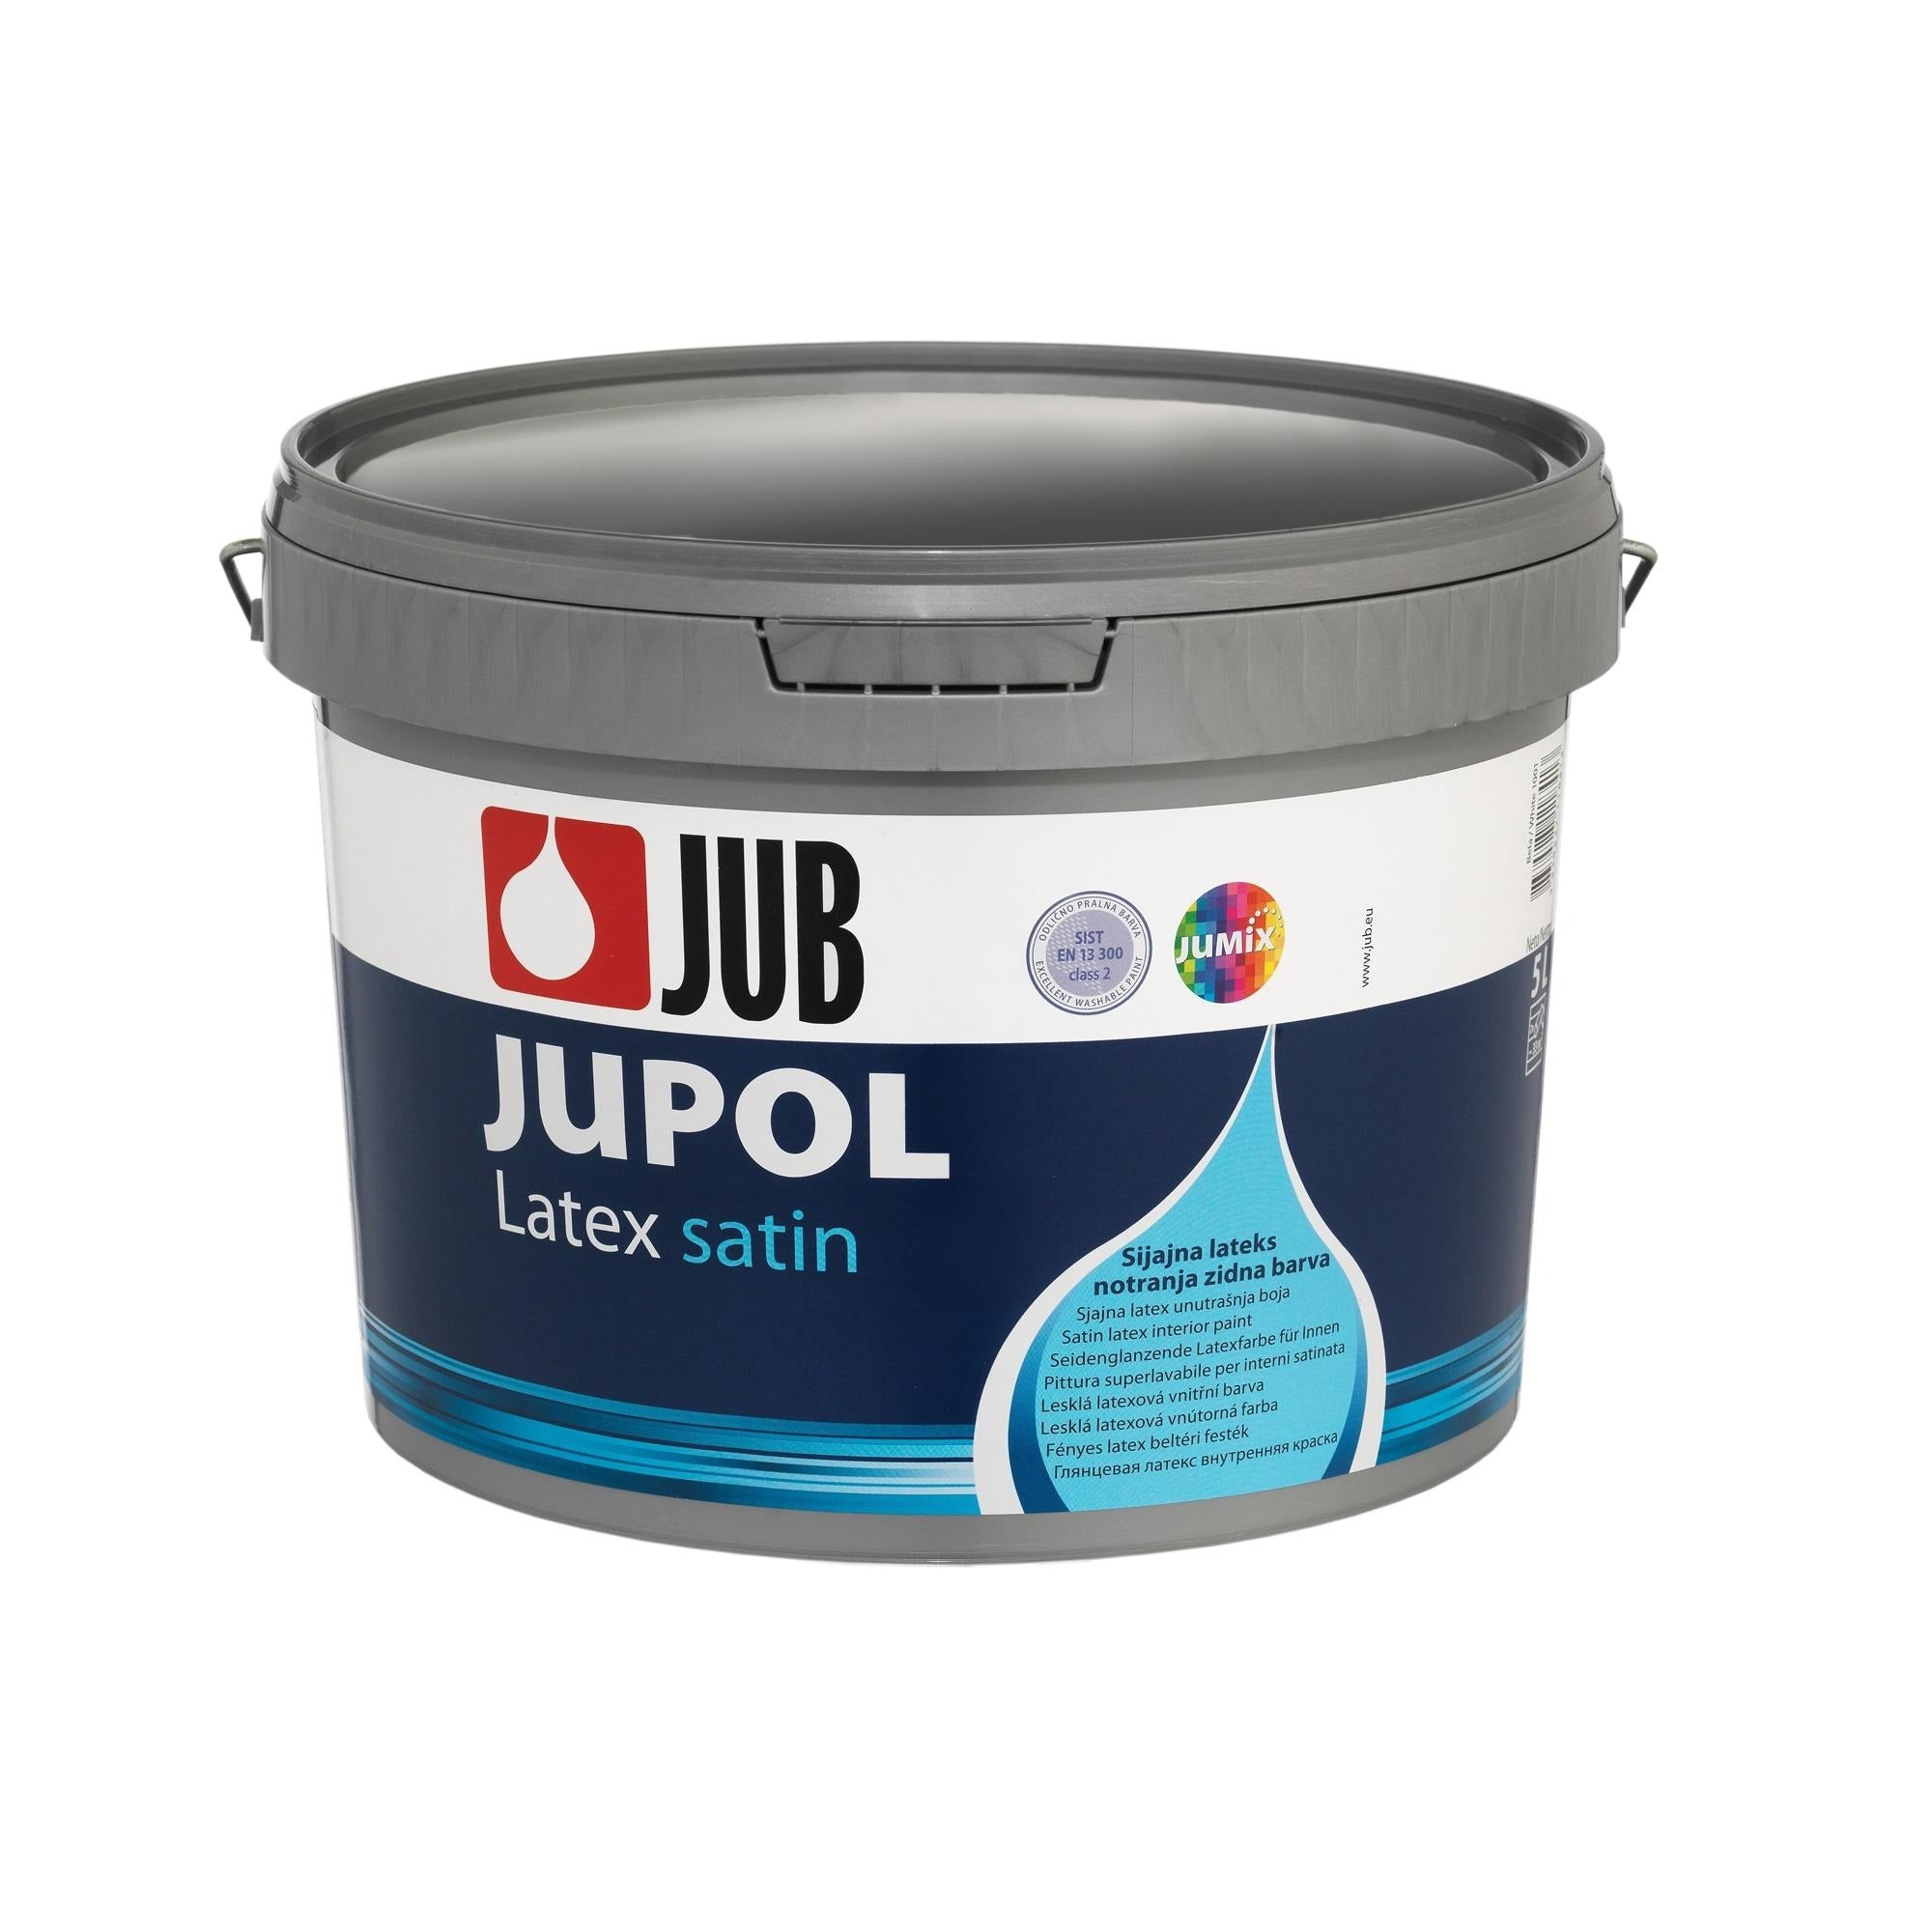 JUB JUPOL Latex satin umývateľná vnútorná maliarska farba 5 l